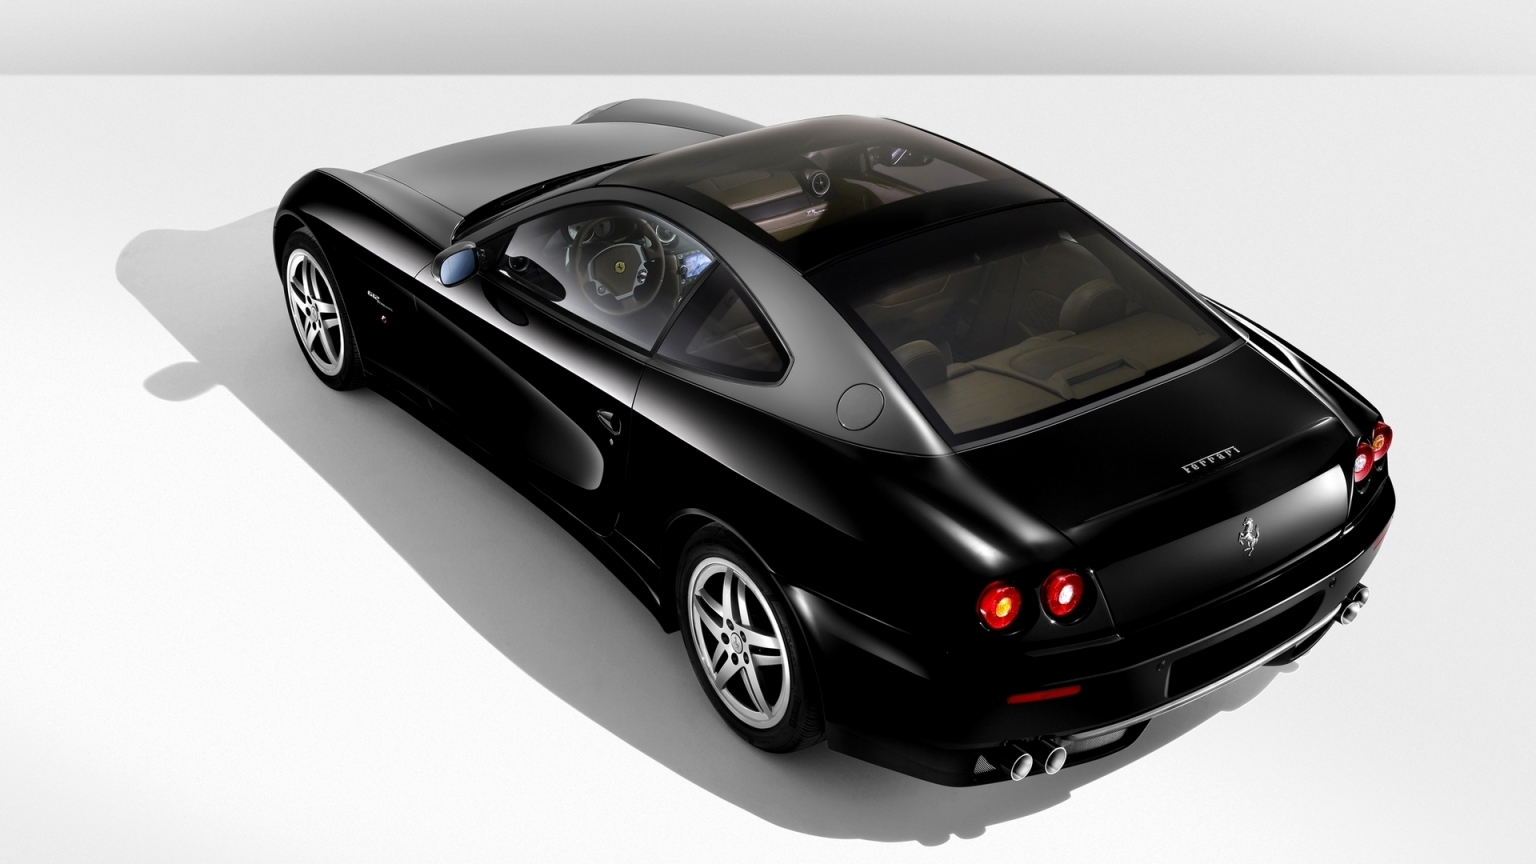 Ferrari 612 Black for 1536 x 864 HDTV resolution